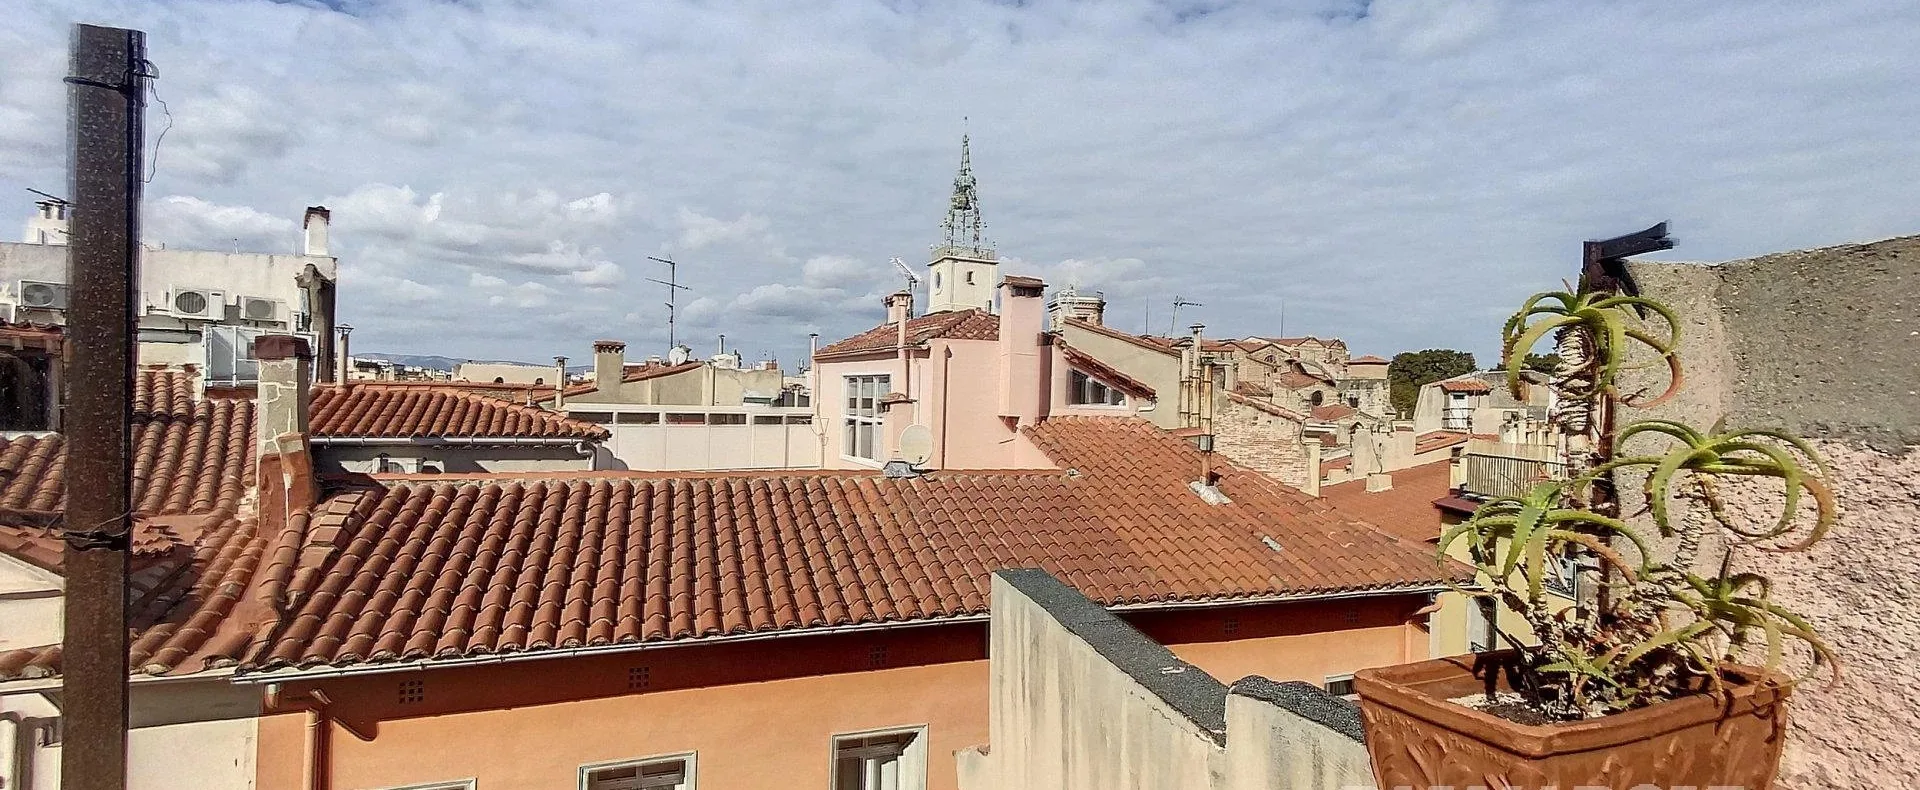 Vente Maison 5 Pièces à Perpignan (66000) - Palmarole Immobilier